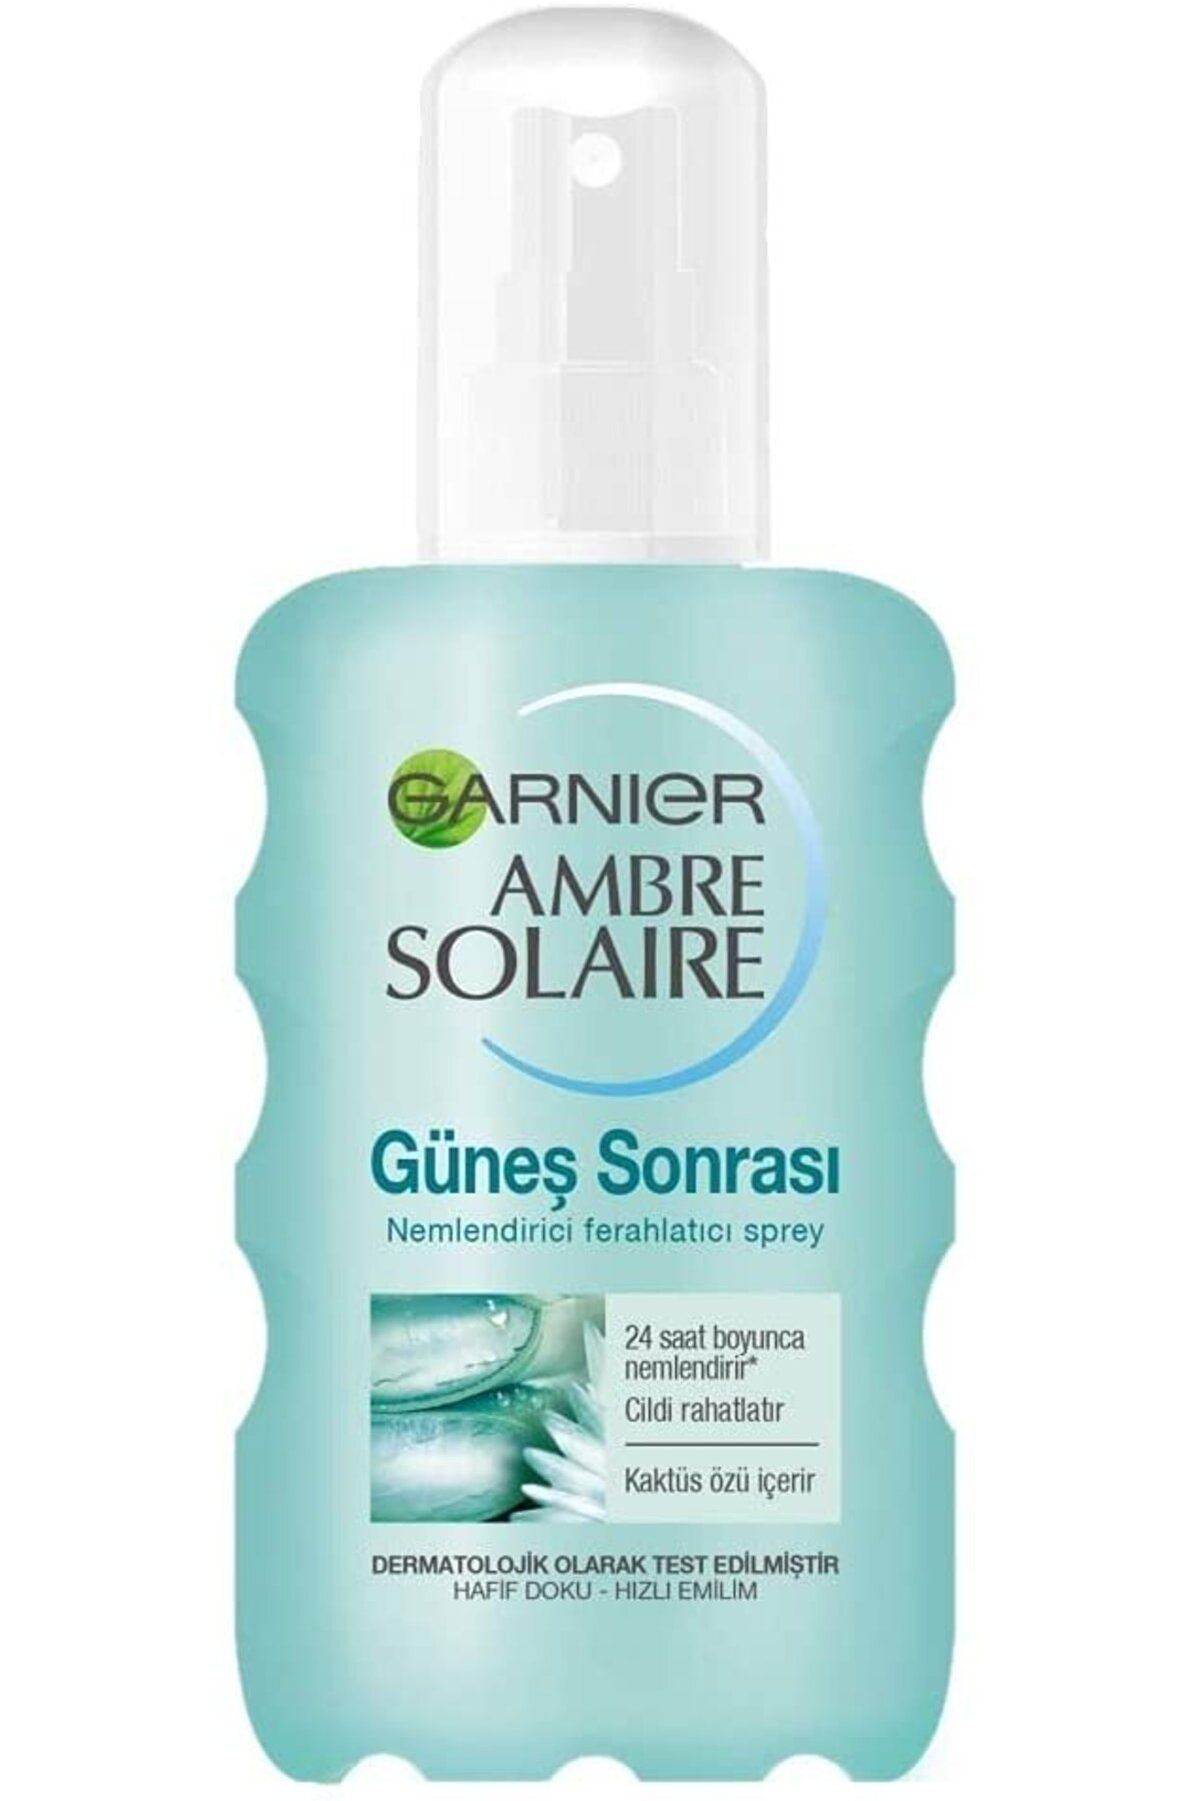 Garnier Skin Naturals Ambre Solaire Güneş Sonrası Nemlendirici Ferahlatıcı Sprey 200 ml